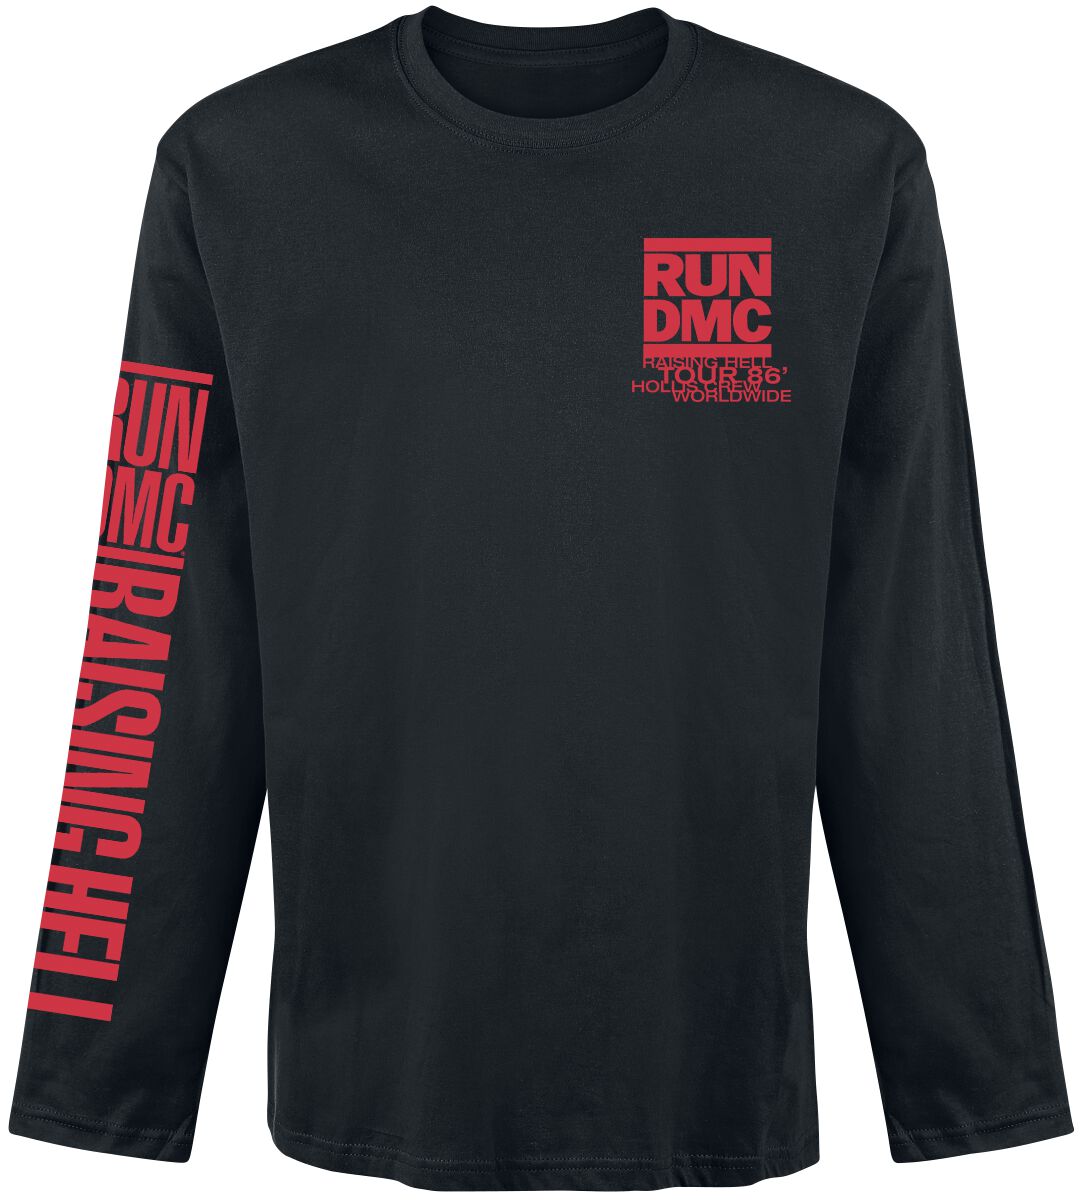 Run DMC Langarmshirt - Raising Hell Tour 86 - S bis L - für Männer - Größe M - schwarz  - Lizenziertes Merchandise! von Run DMC